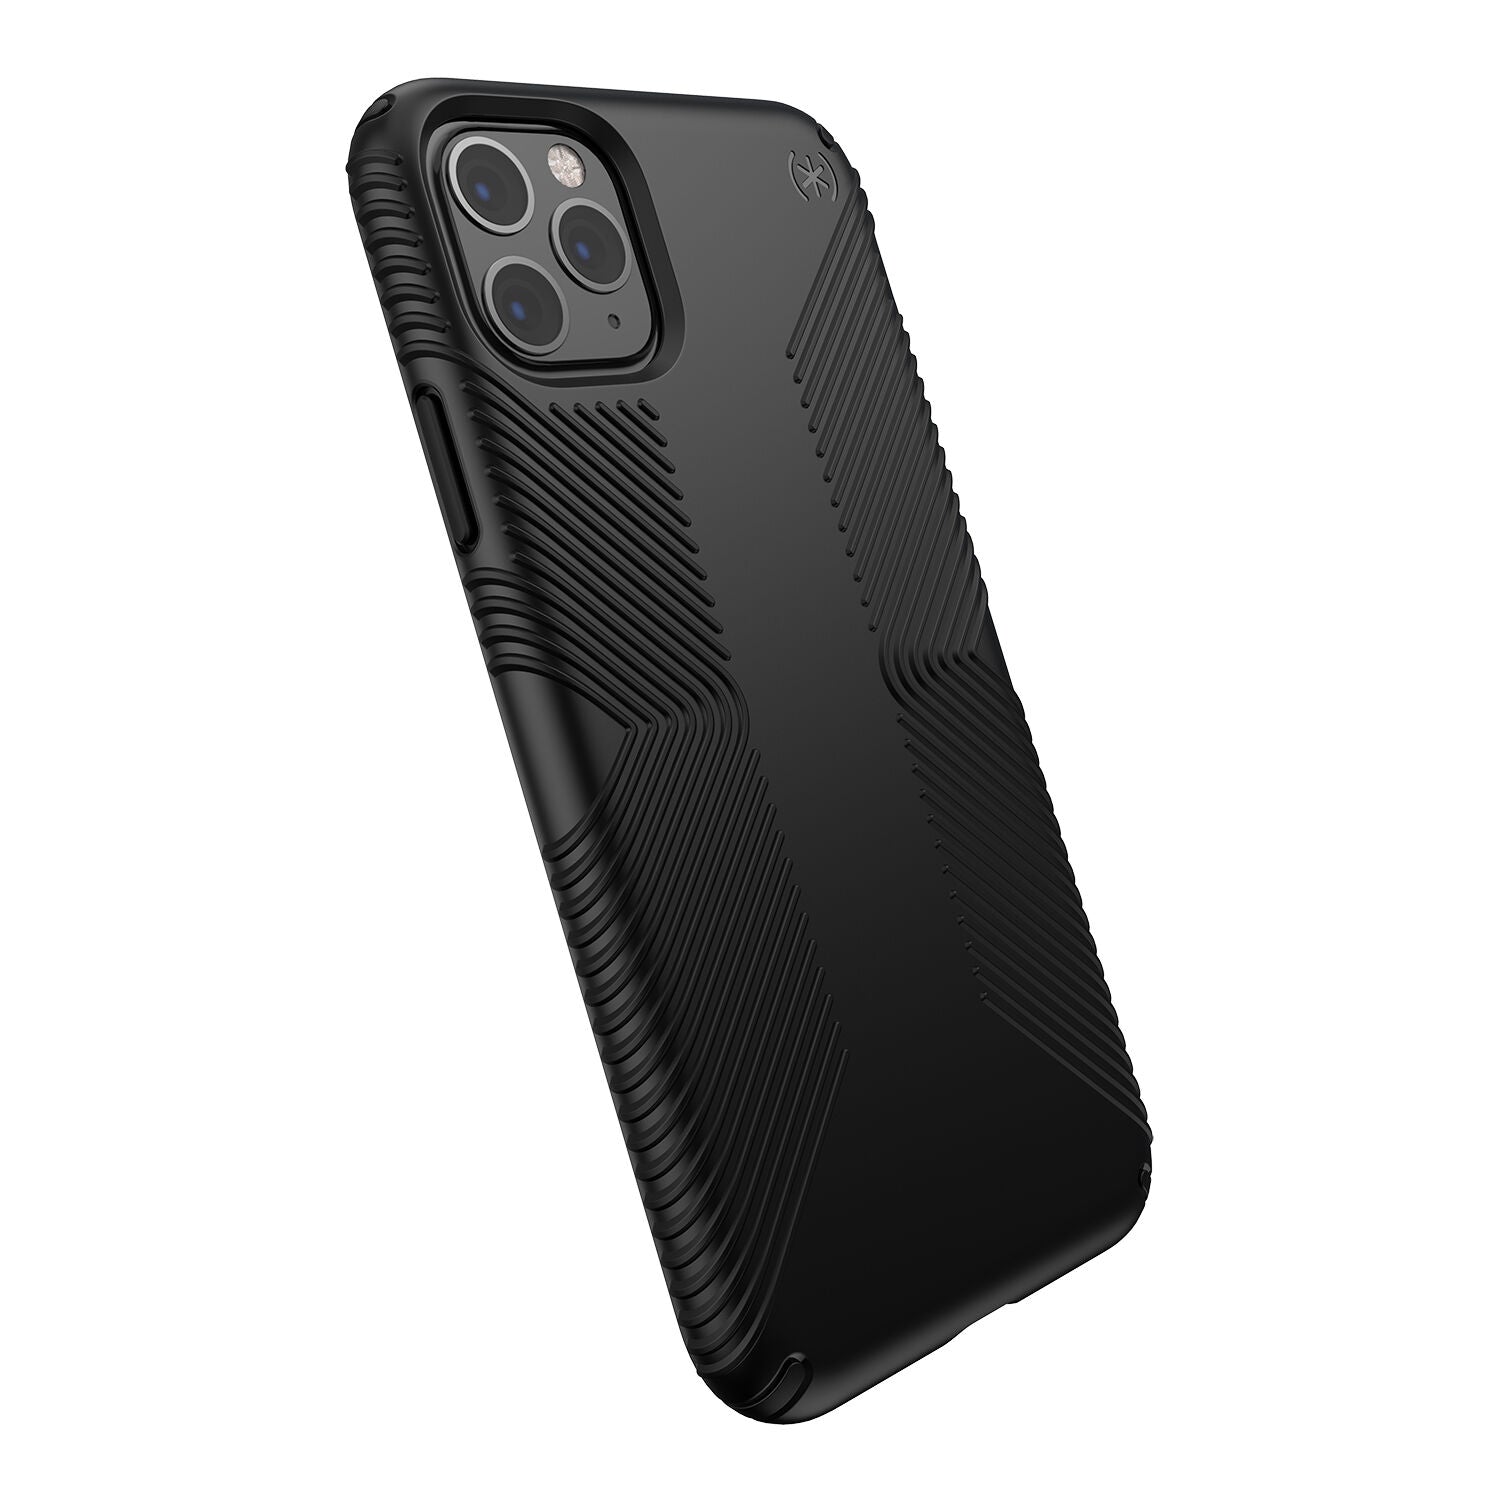 Speck Presidio Grip Case for iPhone 11 Pro Max (Black)